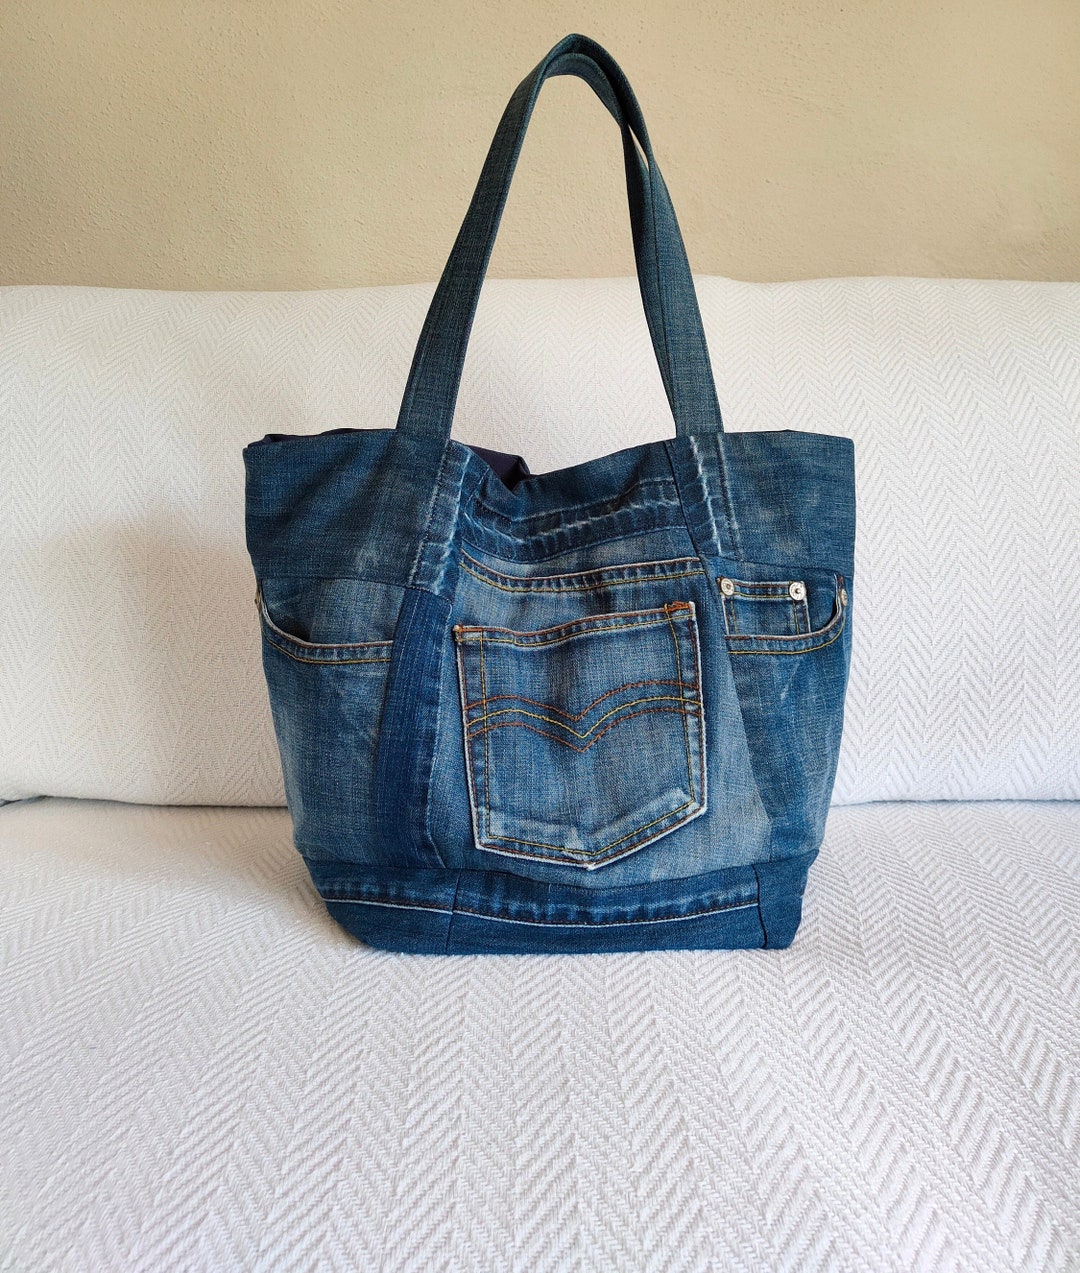 Denim Bag Large Jeans Shoulder Bag Upcycled Denim Patchwork - Etsy